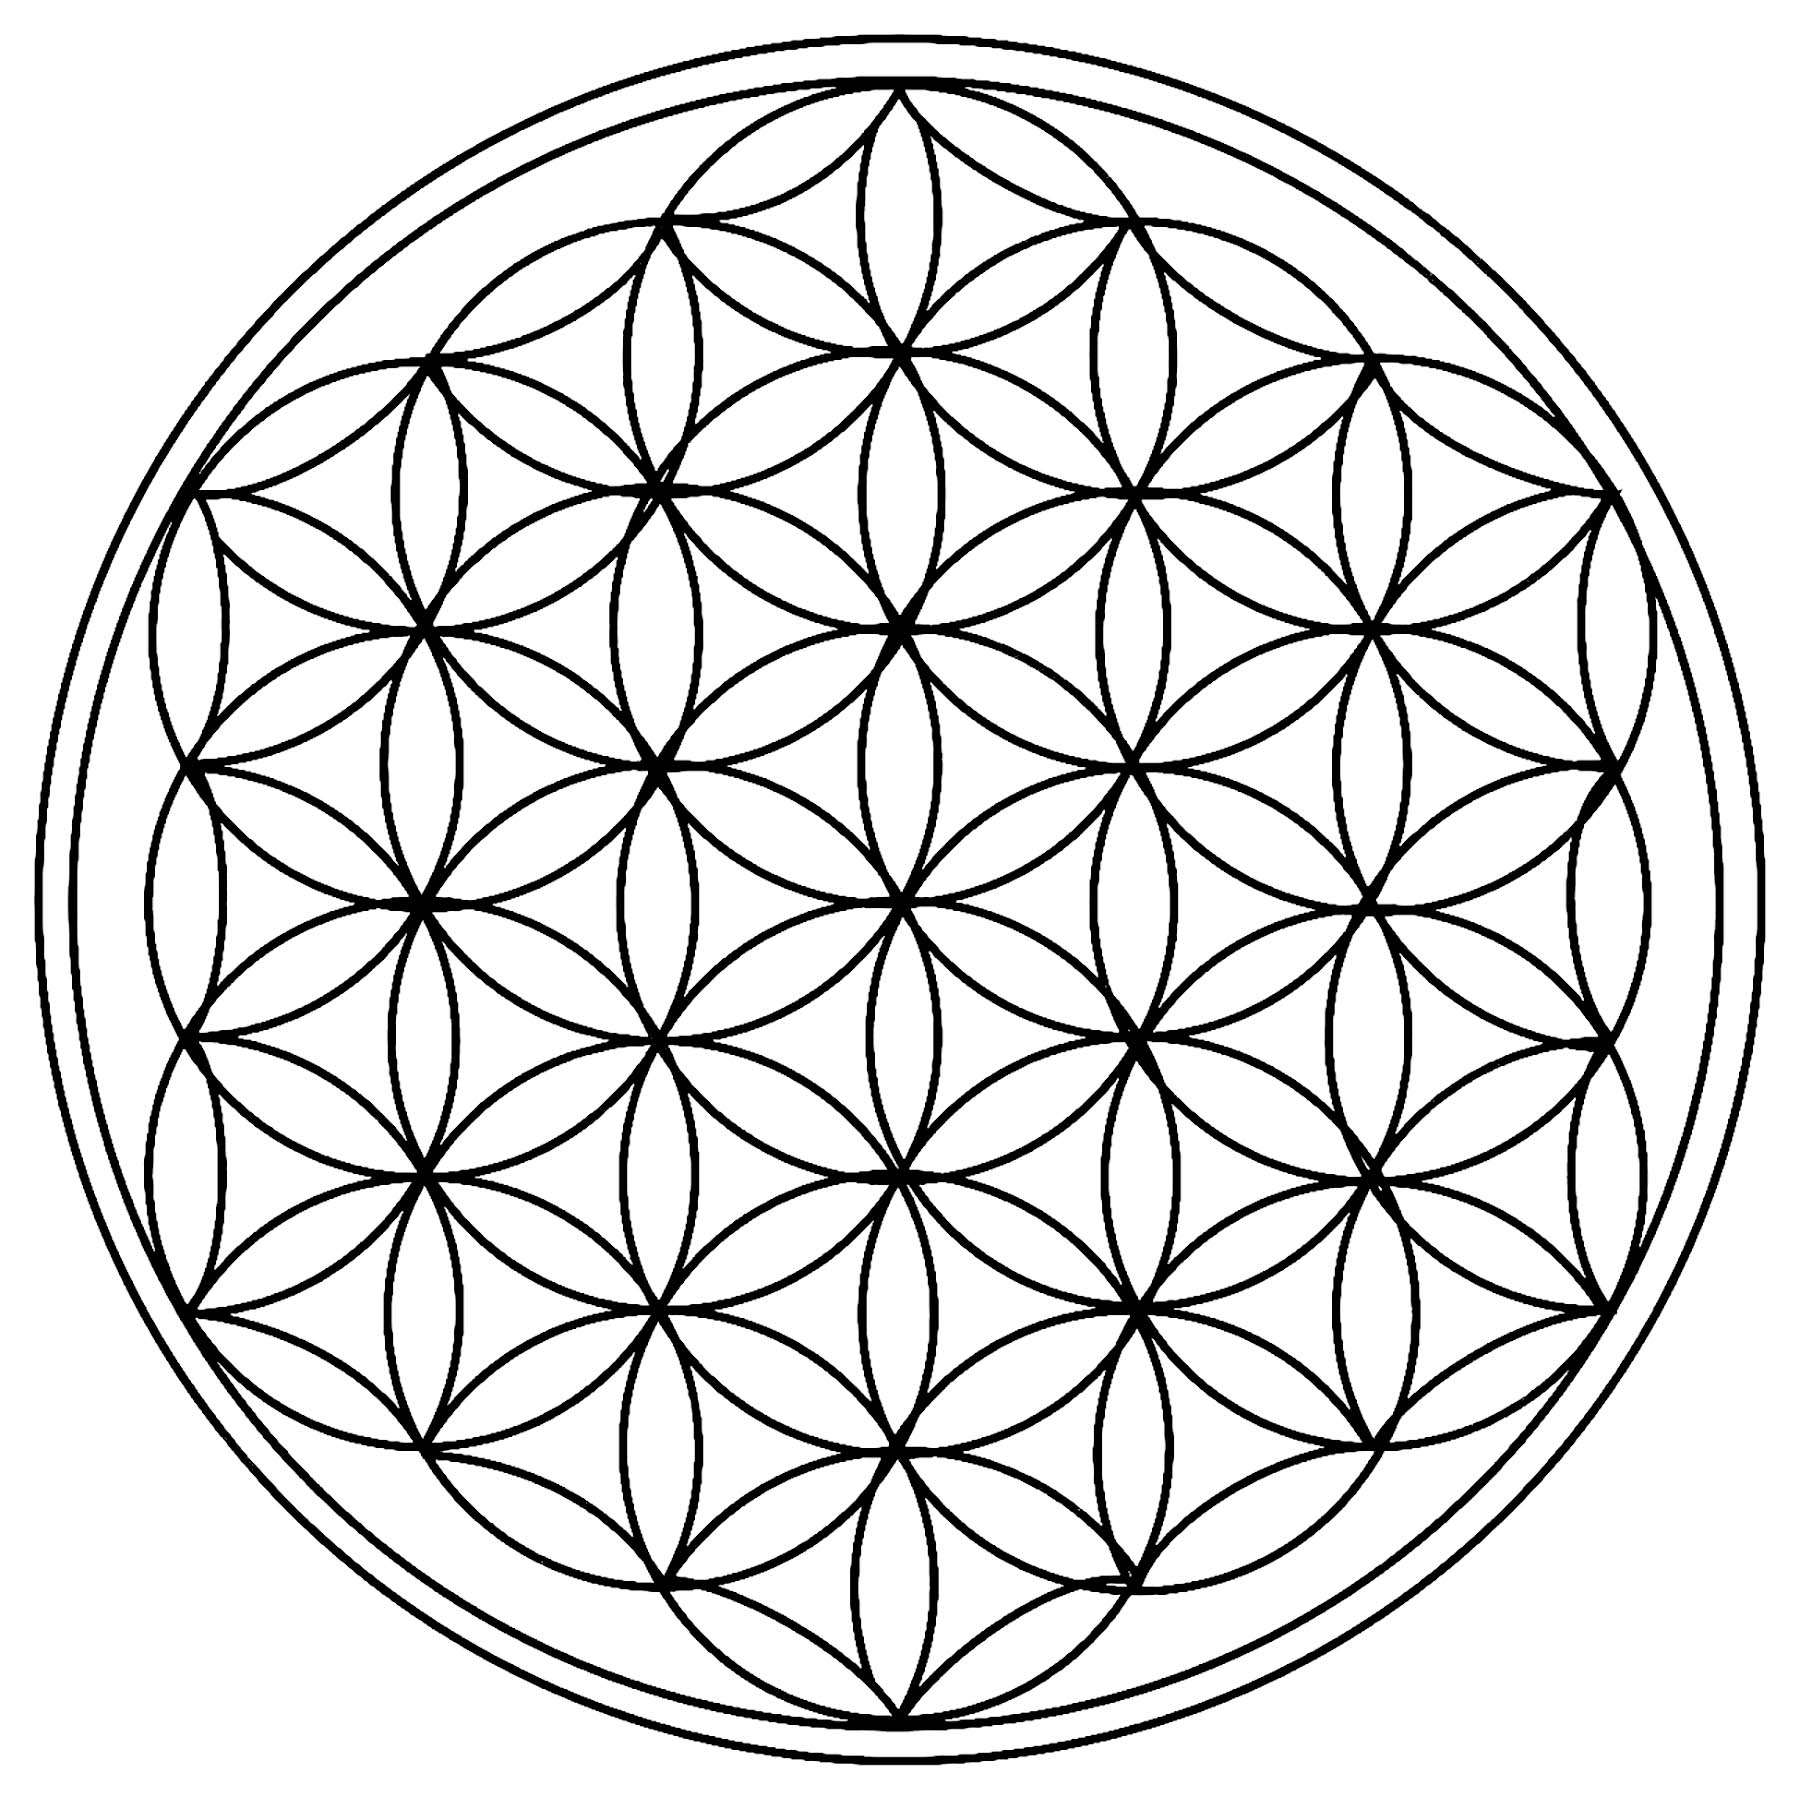 Cerchi multipli di dimensioni identiche, che formano una forma del tutto unica